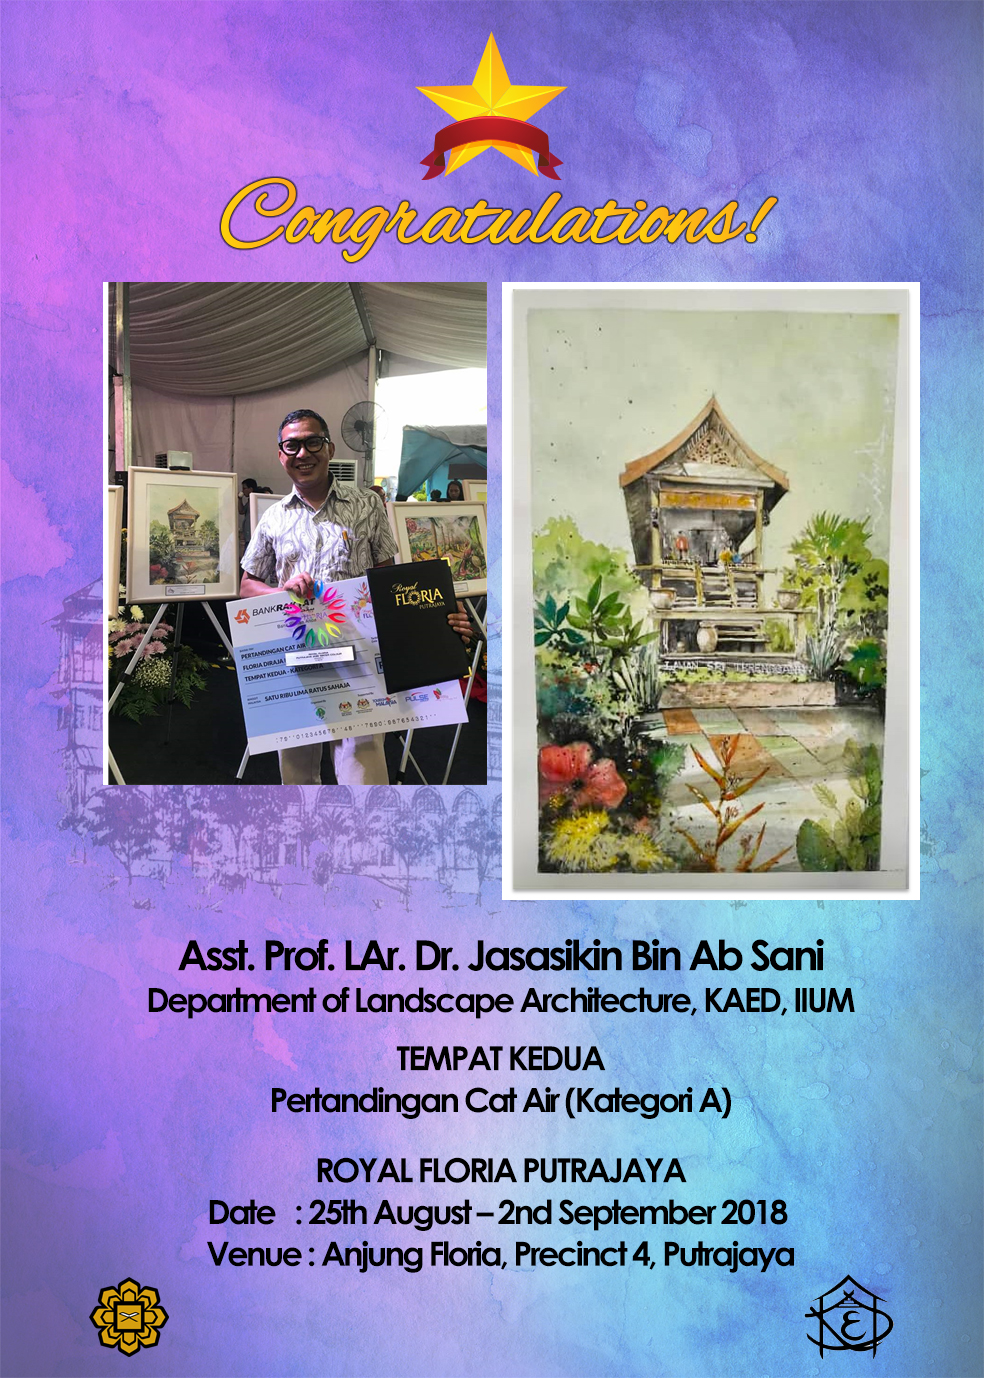 Congratulations Dr. Jasa